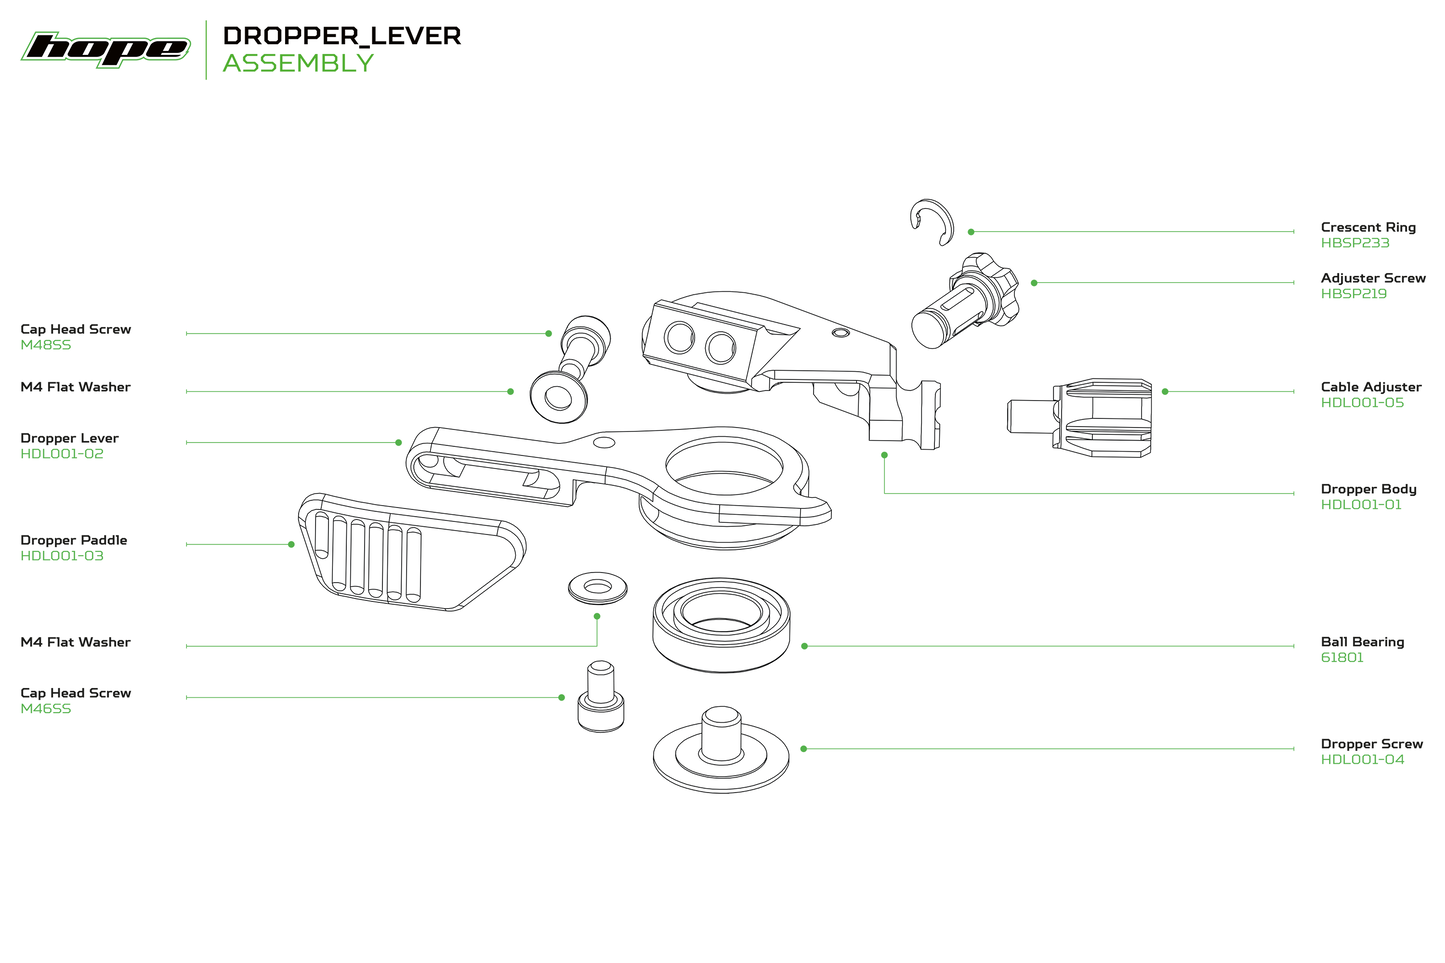 Hope Dropper Lever - Reach Adjuster Screw - Bronze